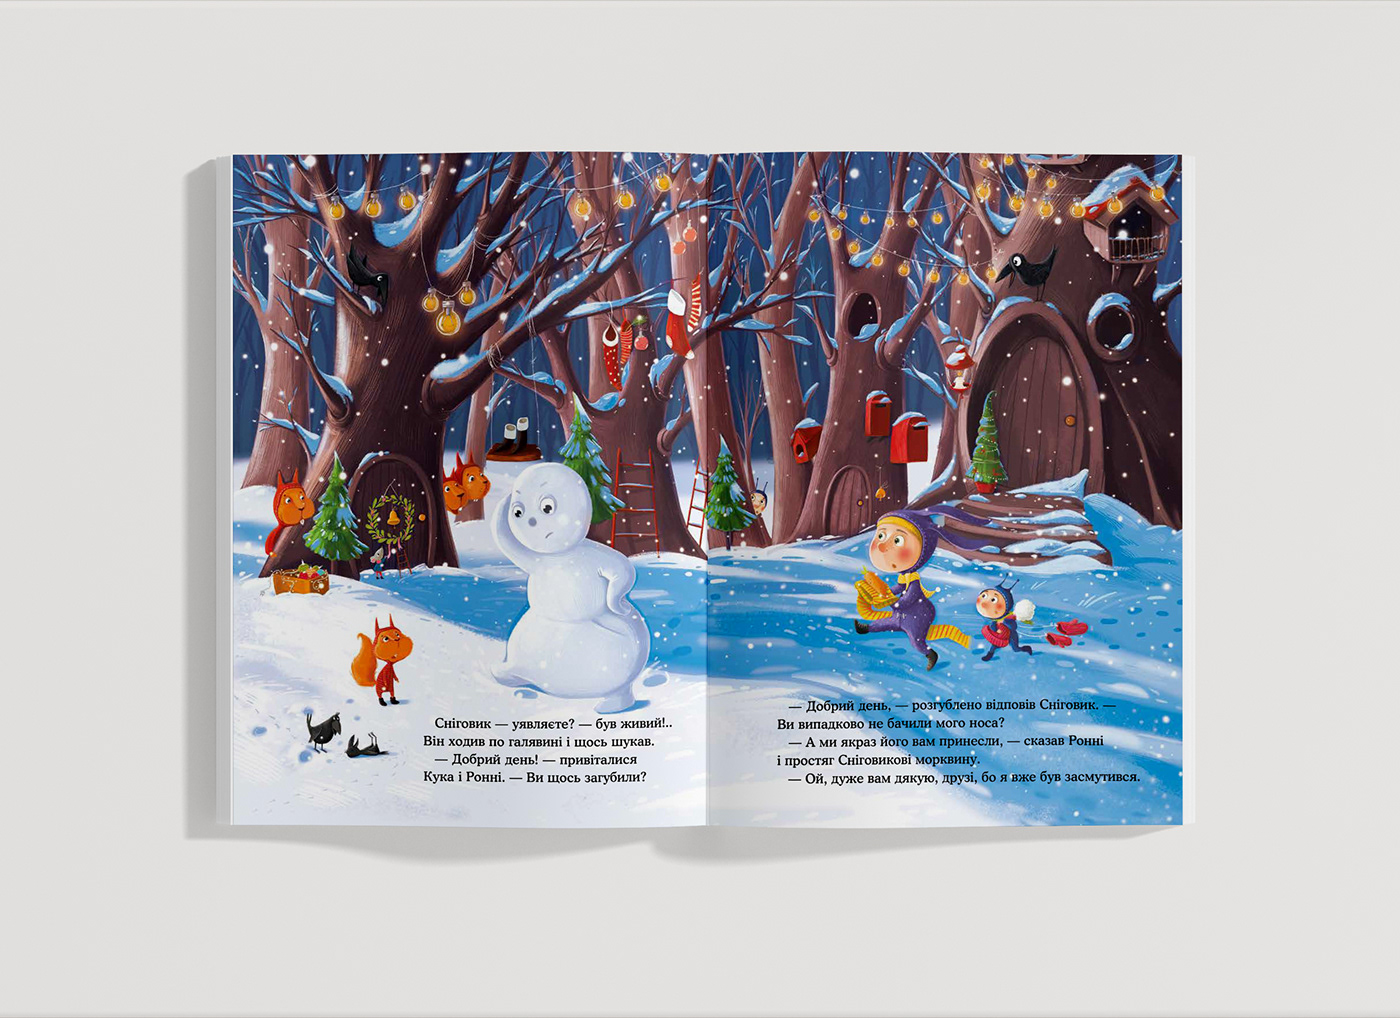 book illustration children's illustration Stories for Children